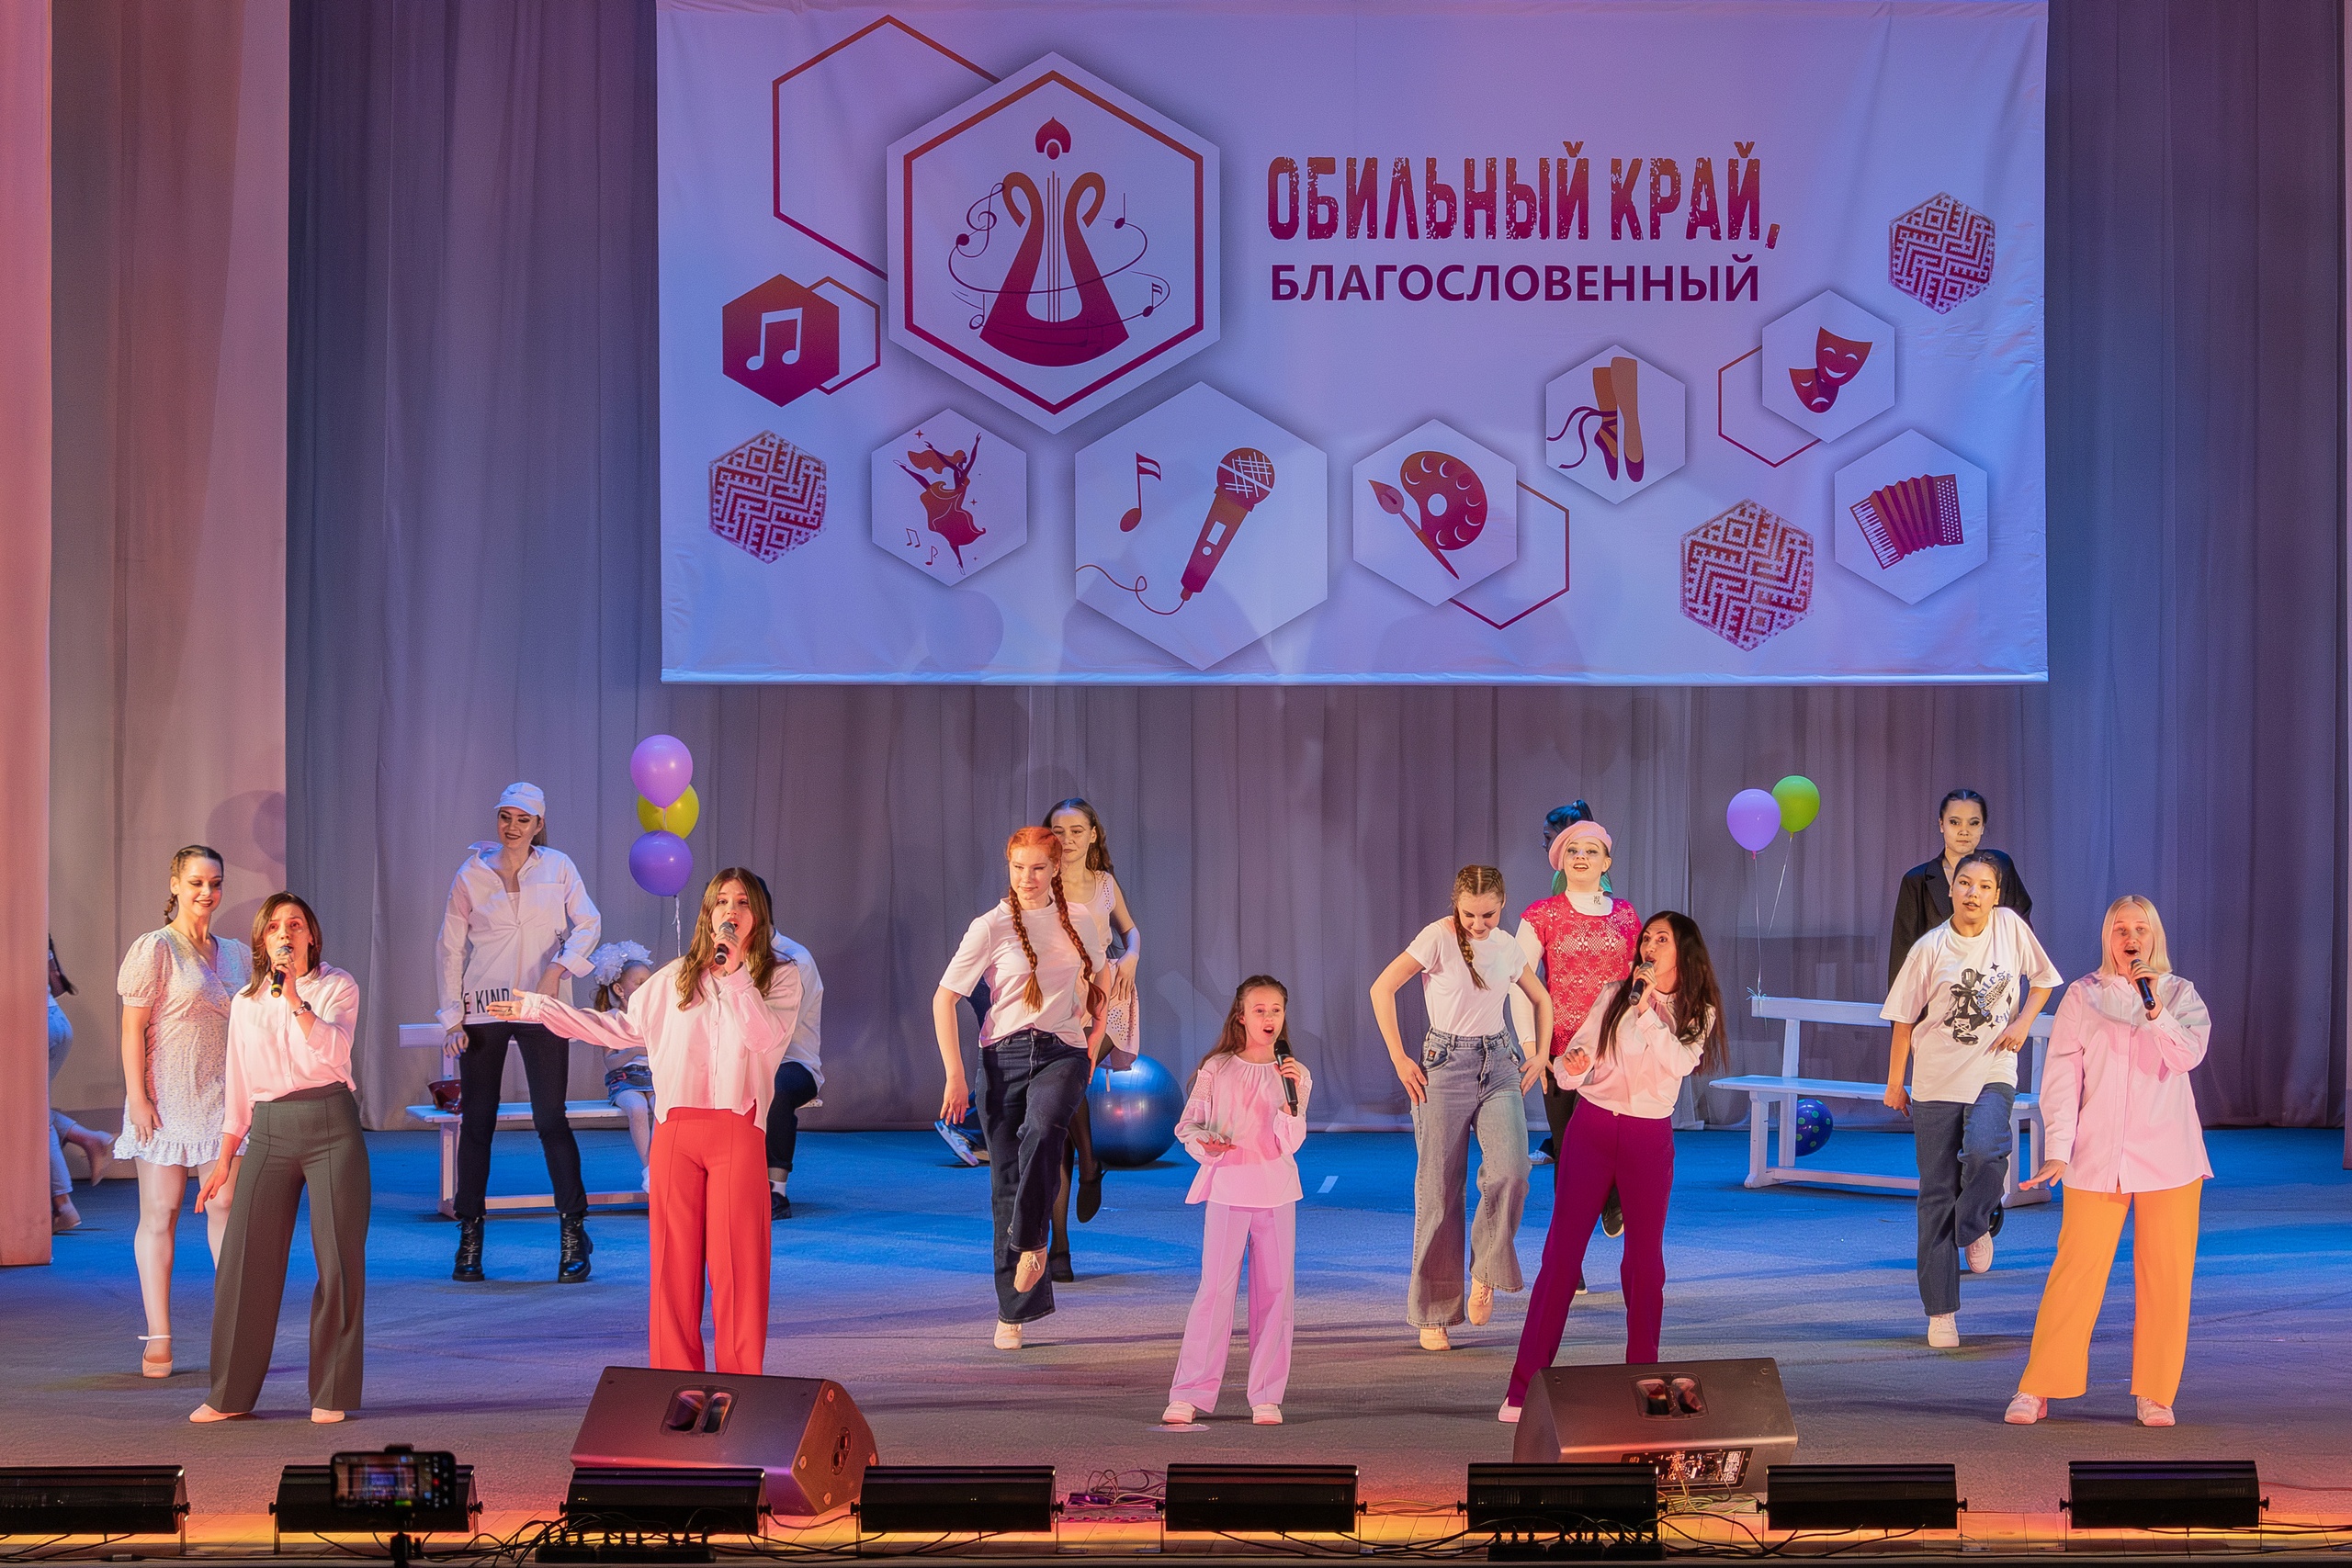 3 дня до гала-концерта областного фестиваля народного творчества «Обильный край, благословенный!»